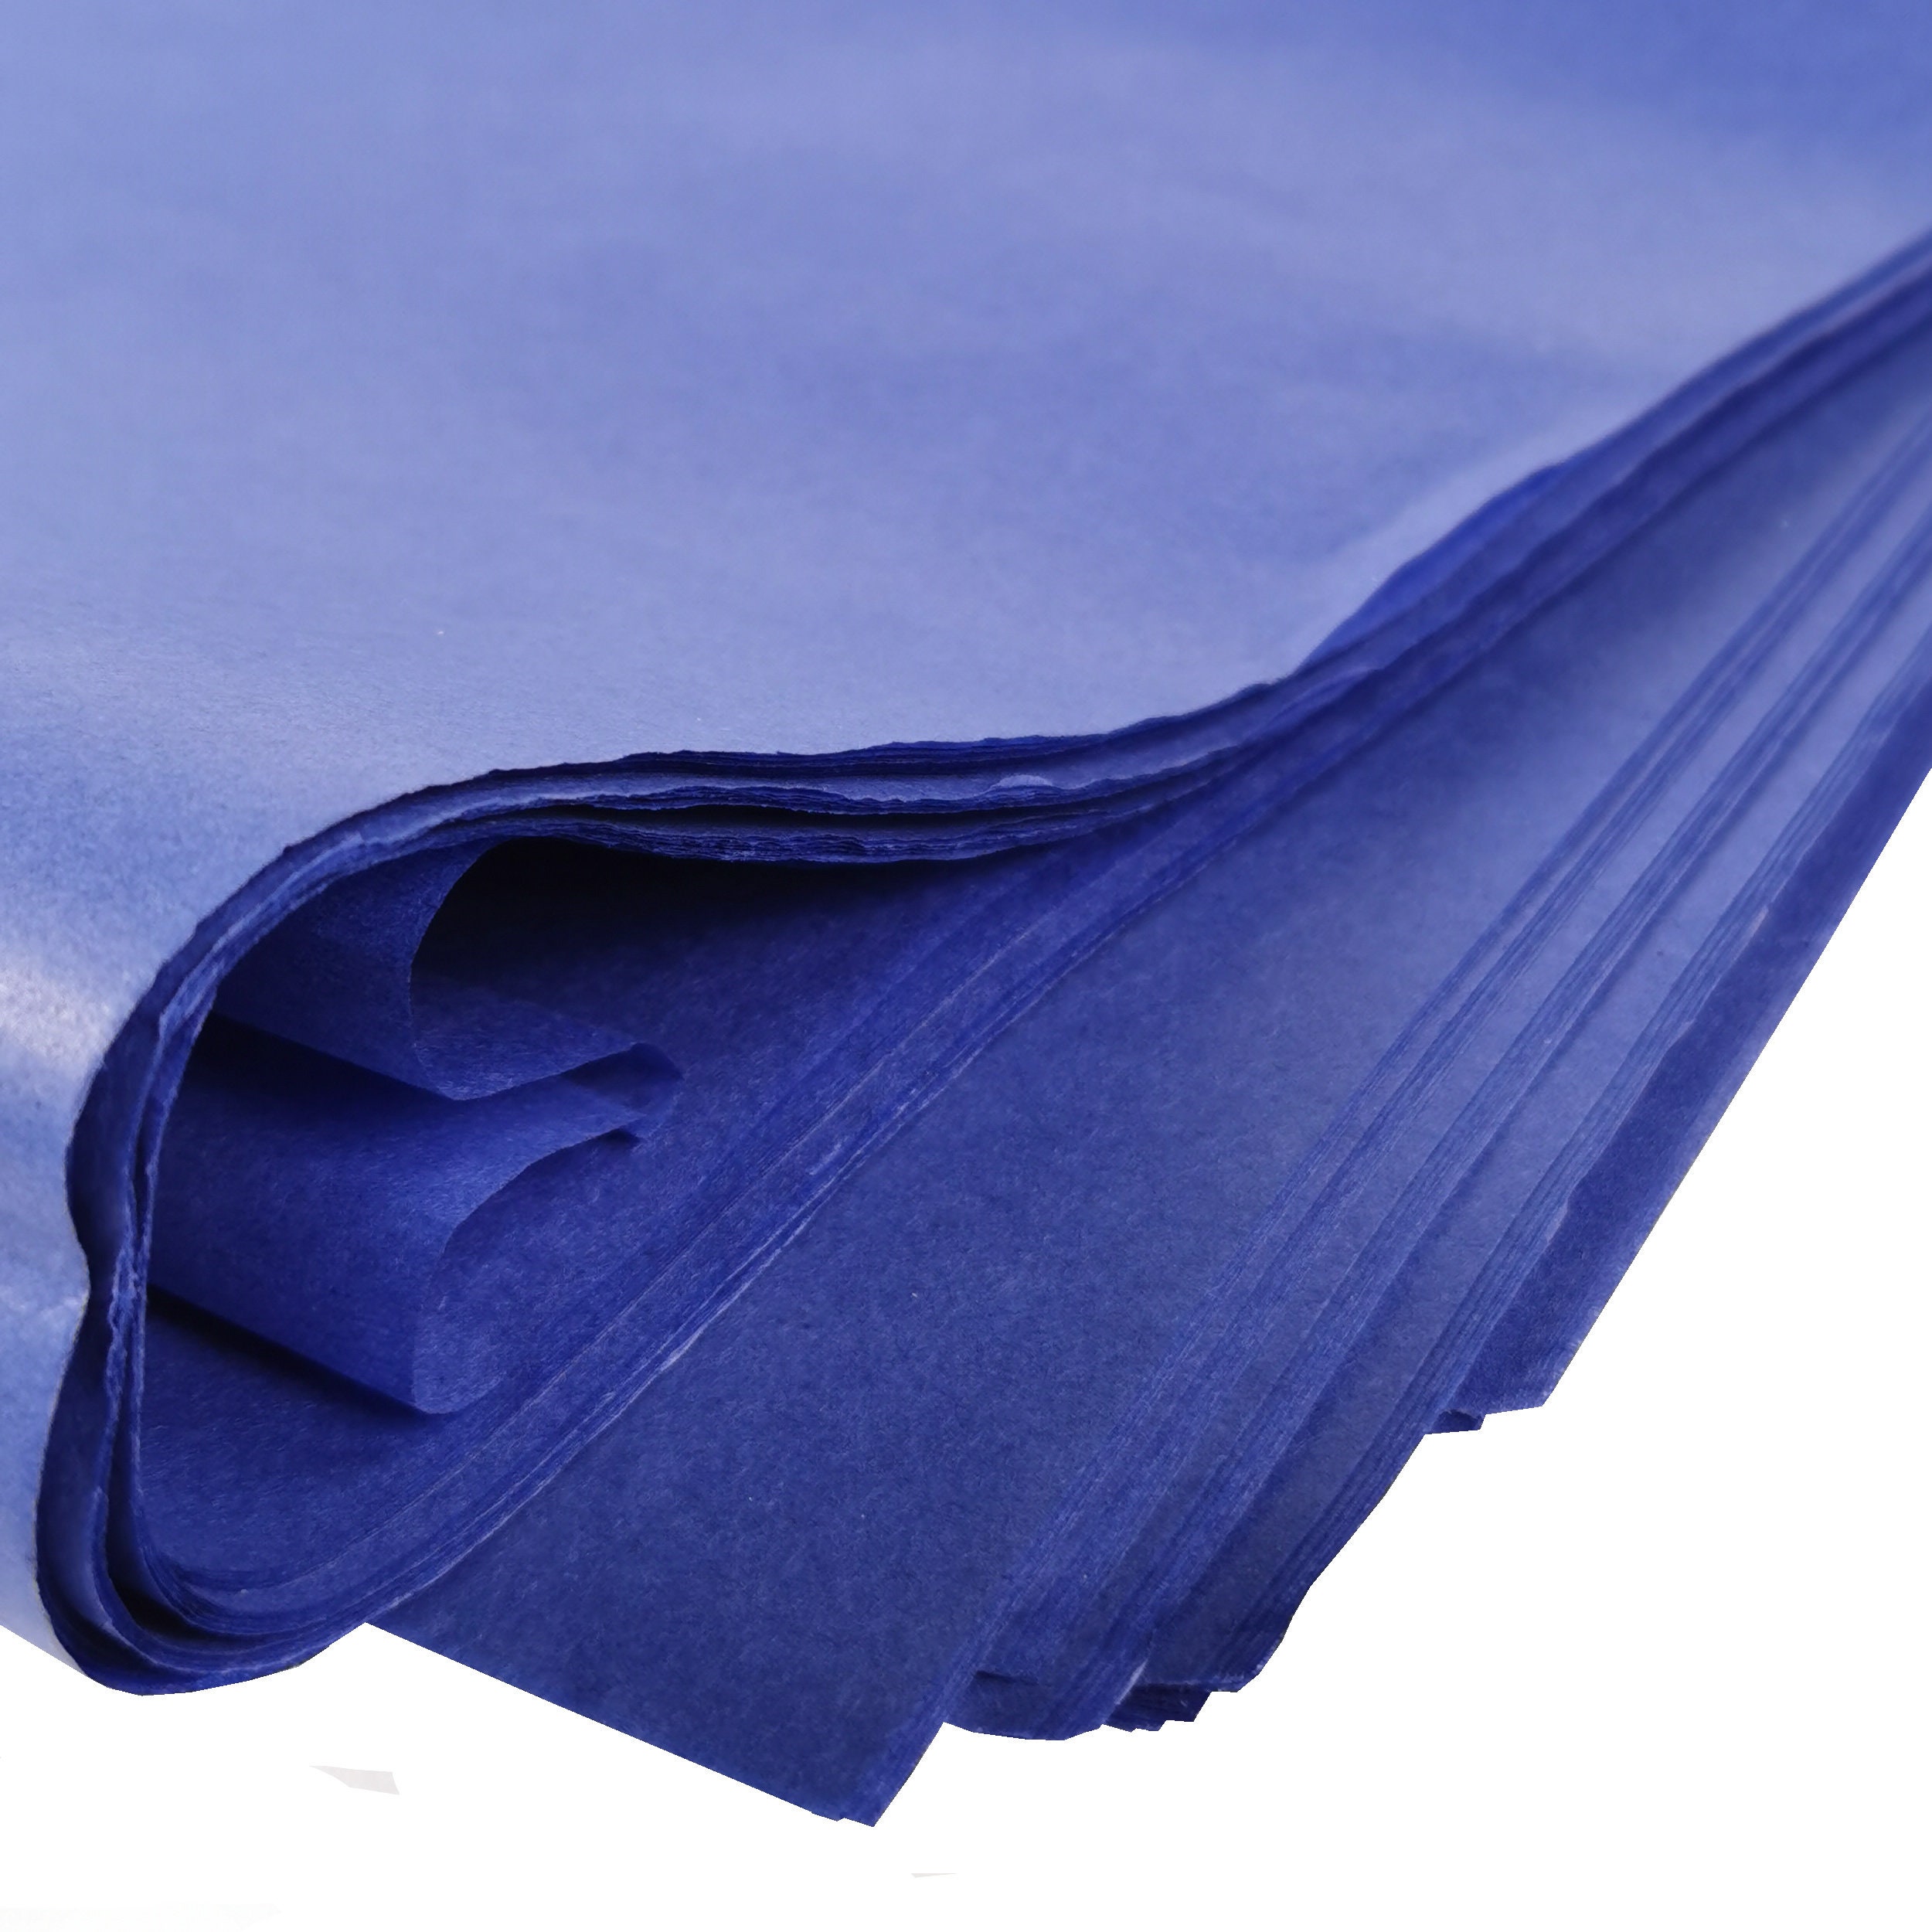 Feuilles de papier de soie bleue pour emballer de grandes feuilles,  emballage cadeau sans acide, stockage, emballage en vrac archivage  déchiquetage 70 x 50cm Taille de feuille -  France